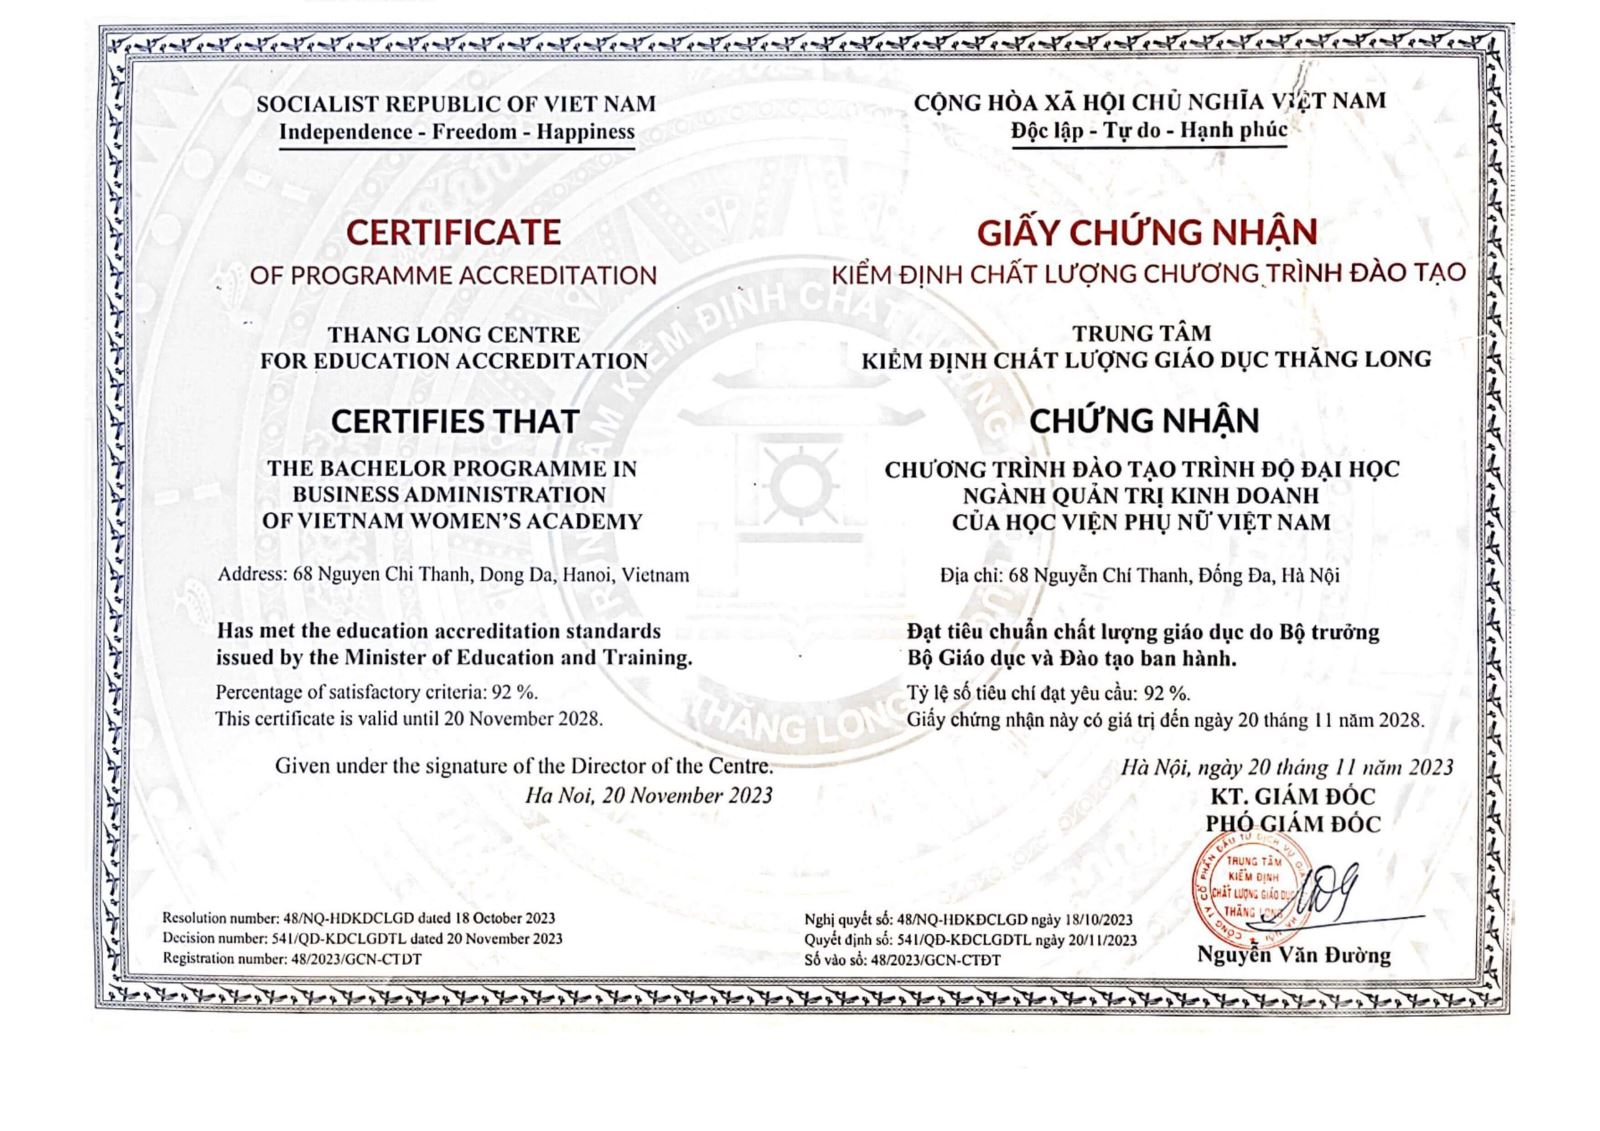 Quyết định công nhận đạt tiêu chuẩn chất lượng CTĐT và cấp giấy CN kiểm định chất lượng ngành Quản trị kinh doanh, Học viện Phụ nữ Việt Nam